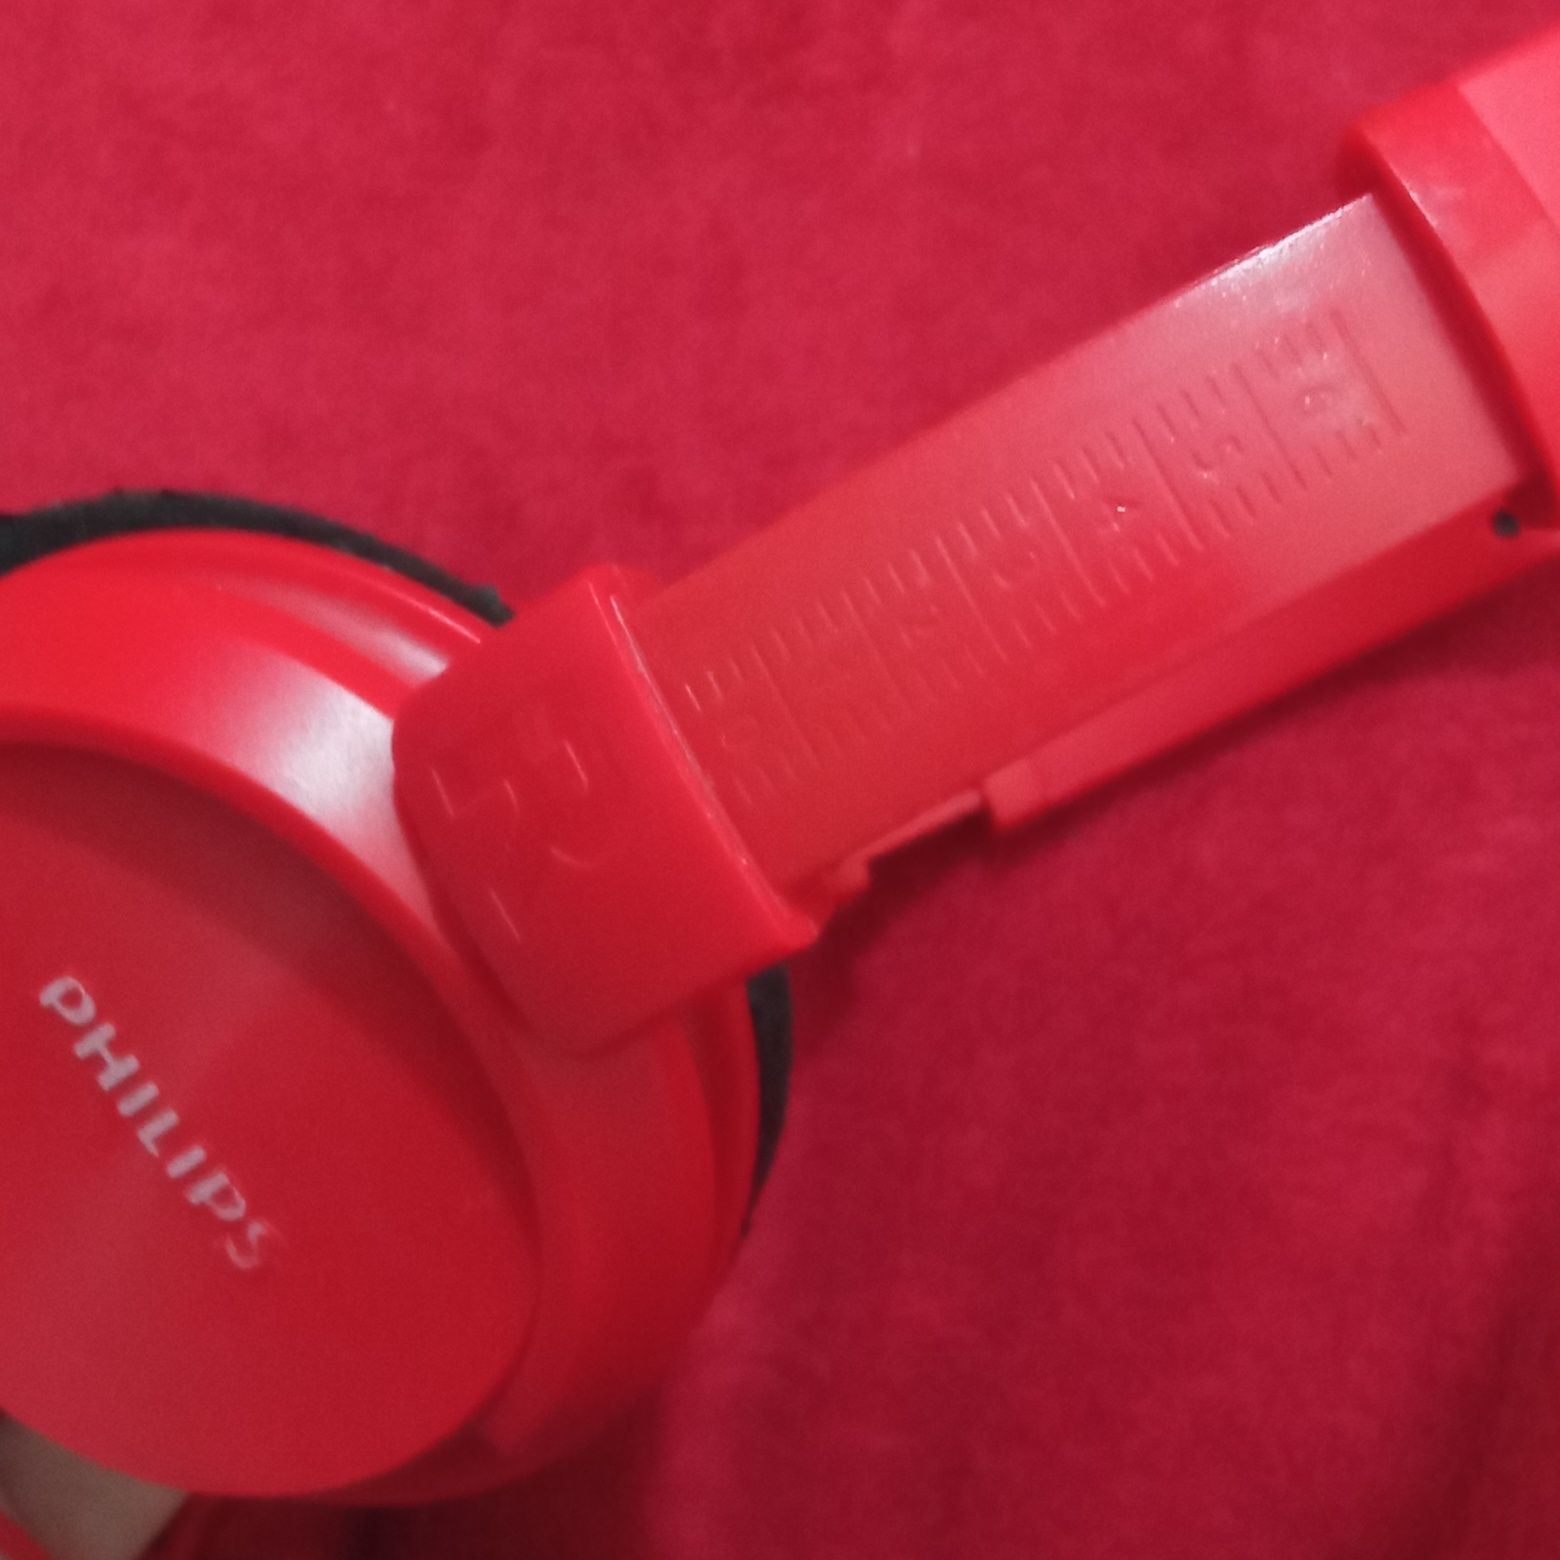 Червоні навушники PHILIPS SHL3060 Red